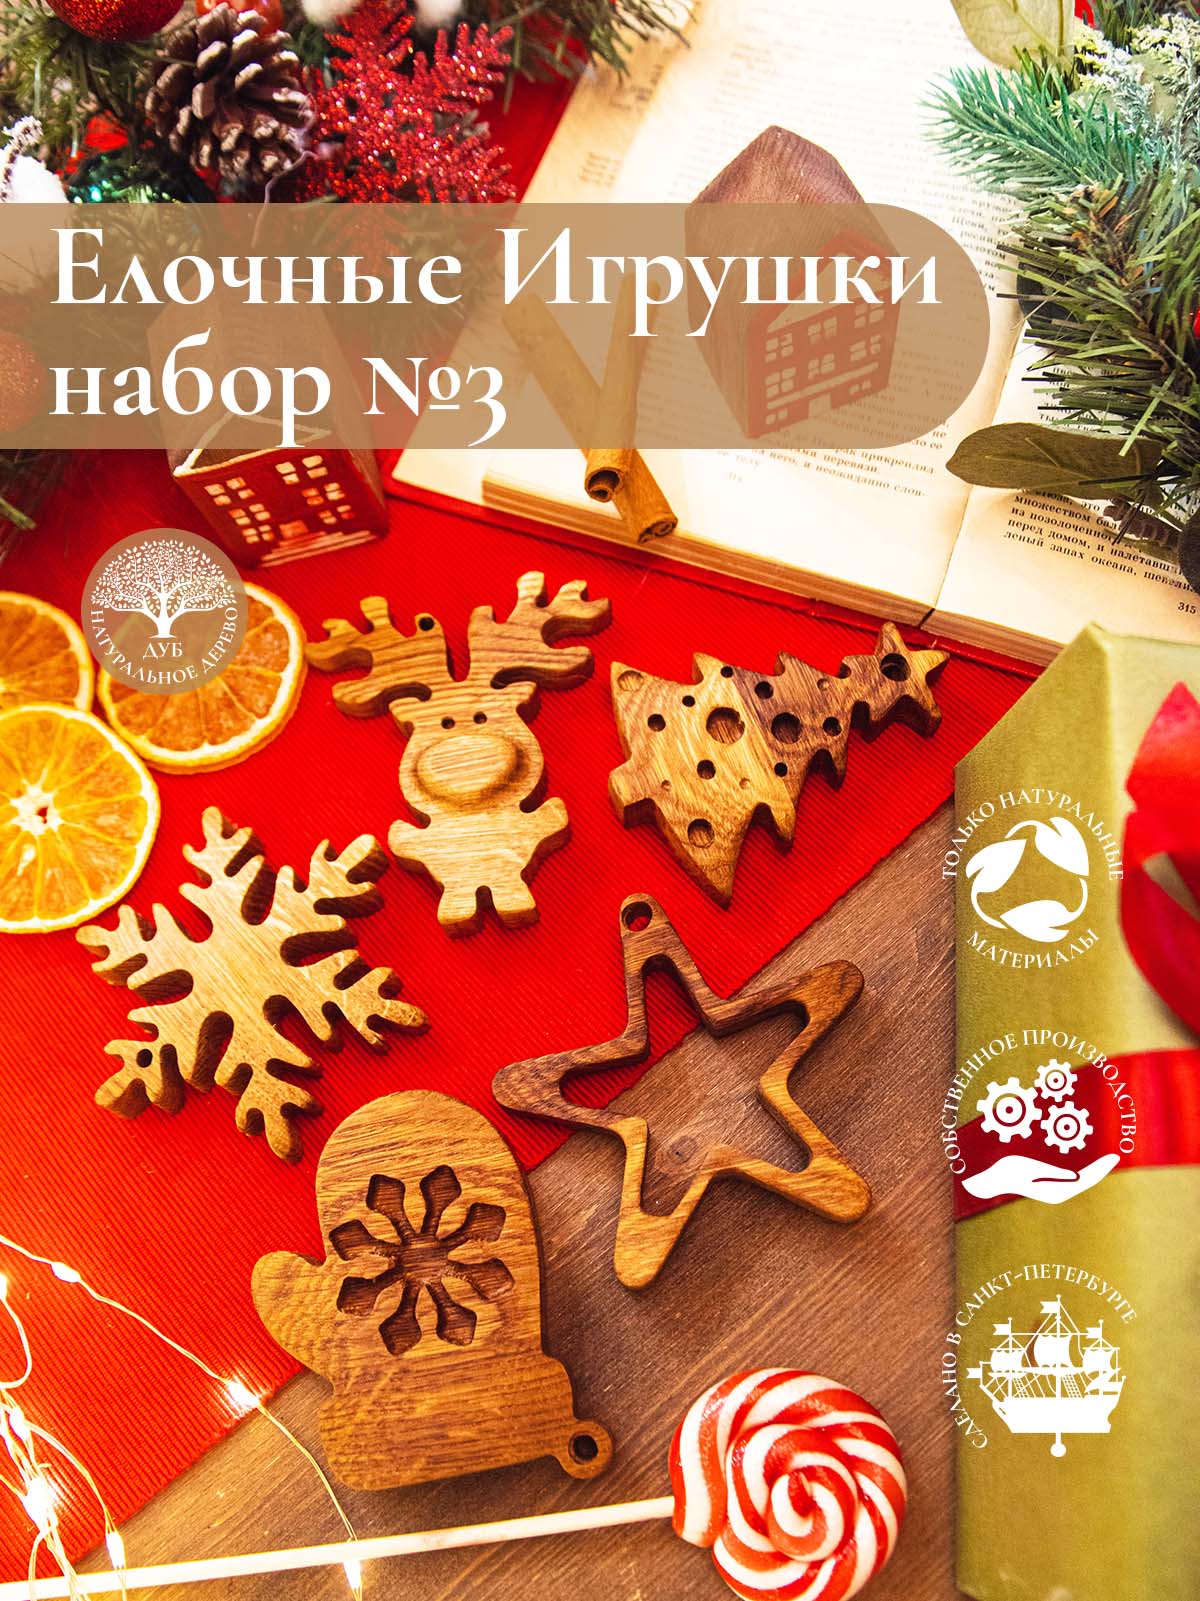 Новогодний набор из 5-ти деревянных ёлочных игрушек из дуба Варежка Звездочка Снежинка Олененок Елка